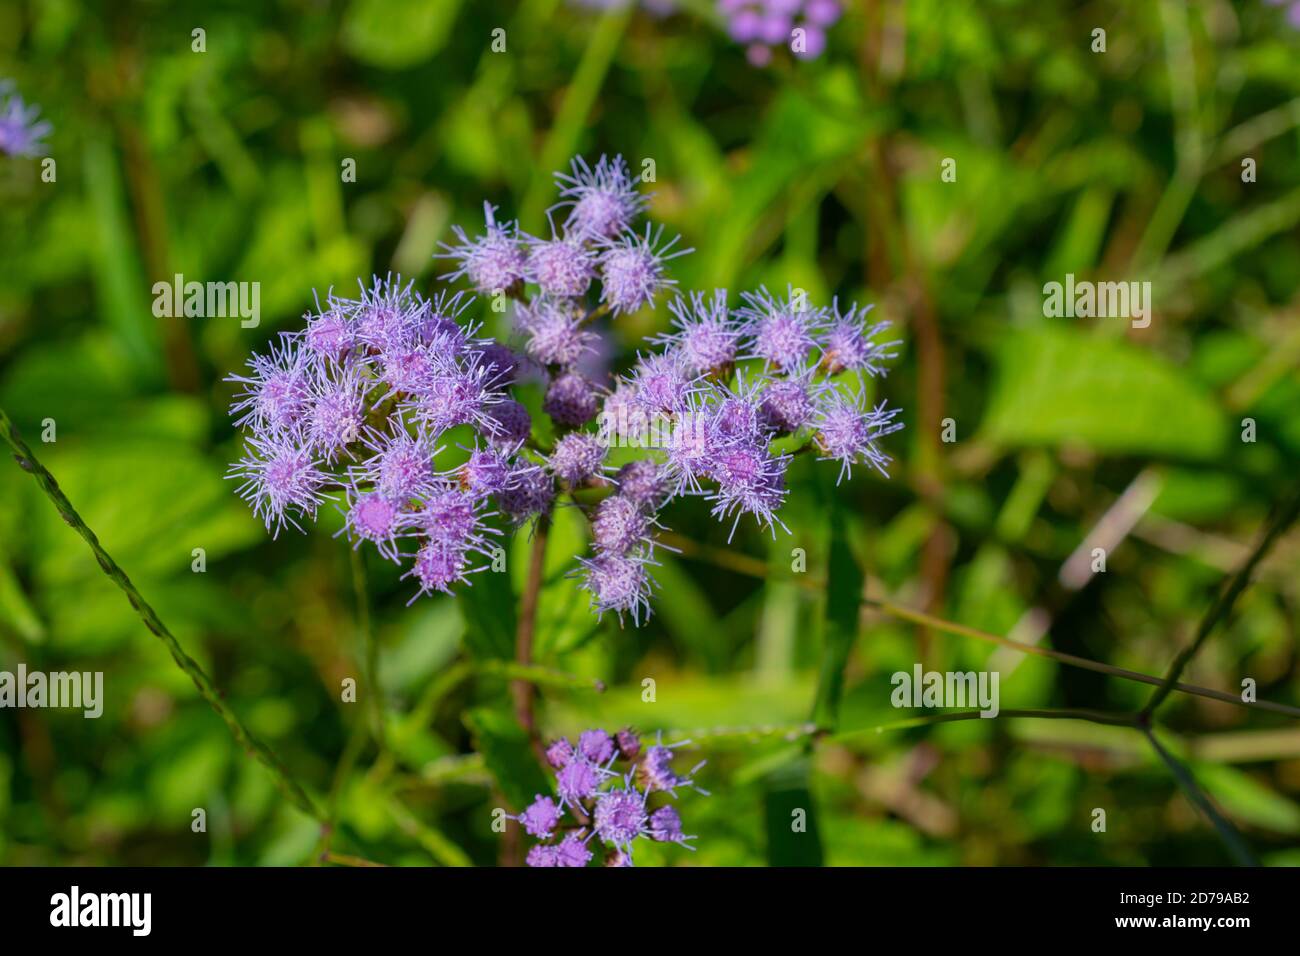 Blue mistflower growing in a field Stock Photo